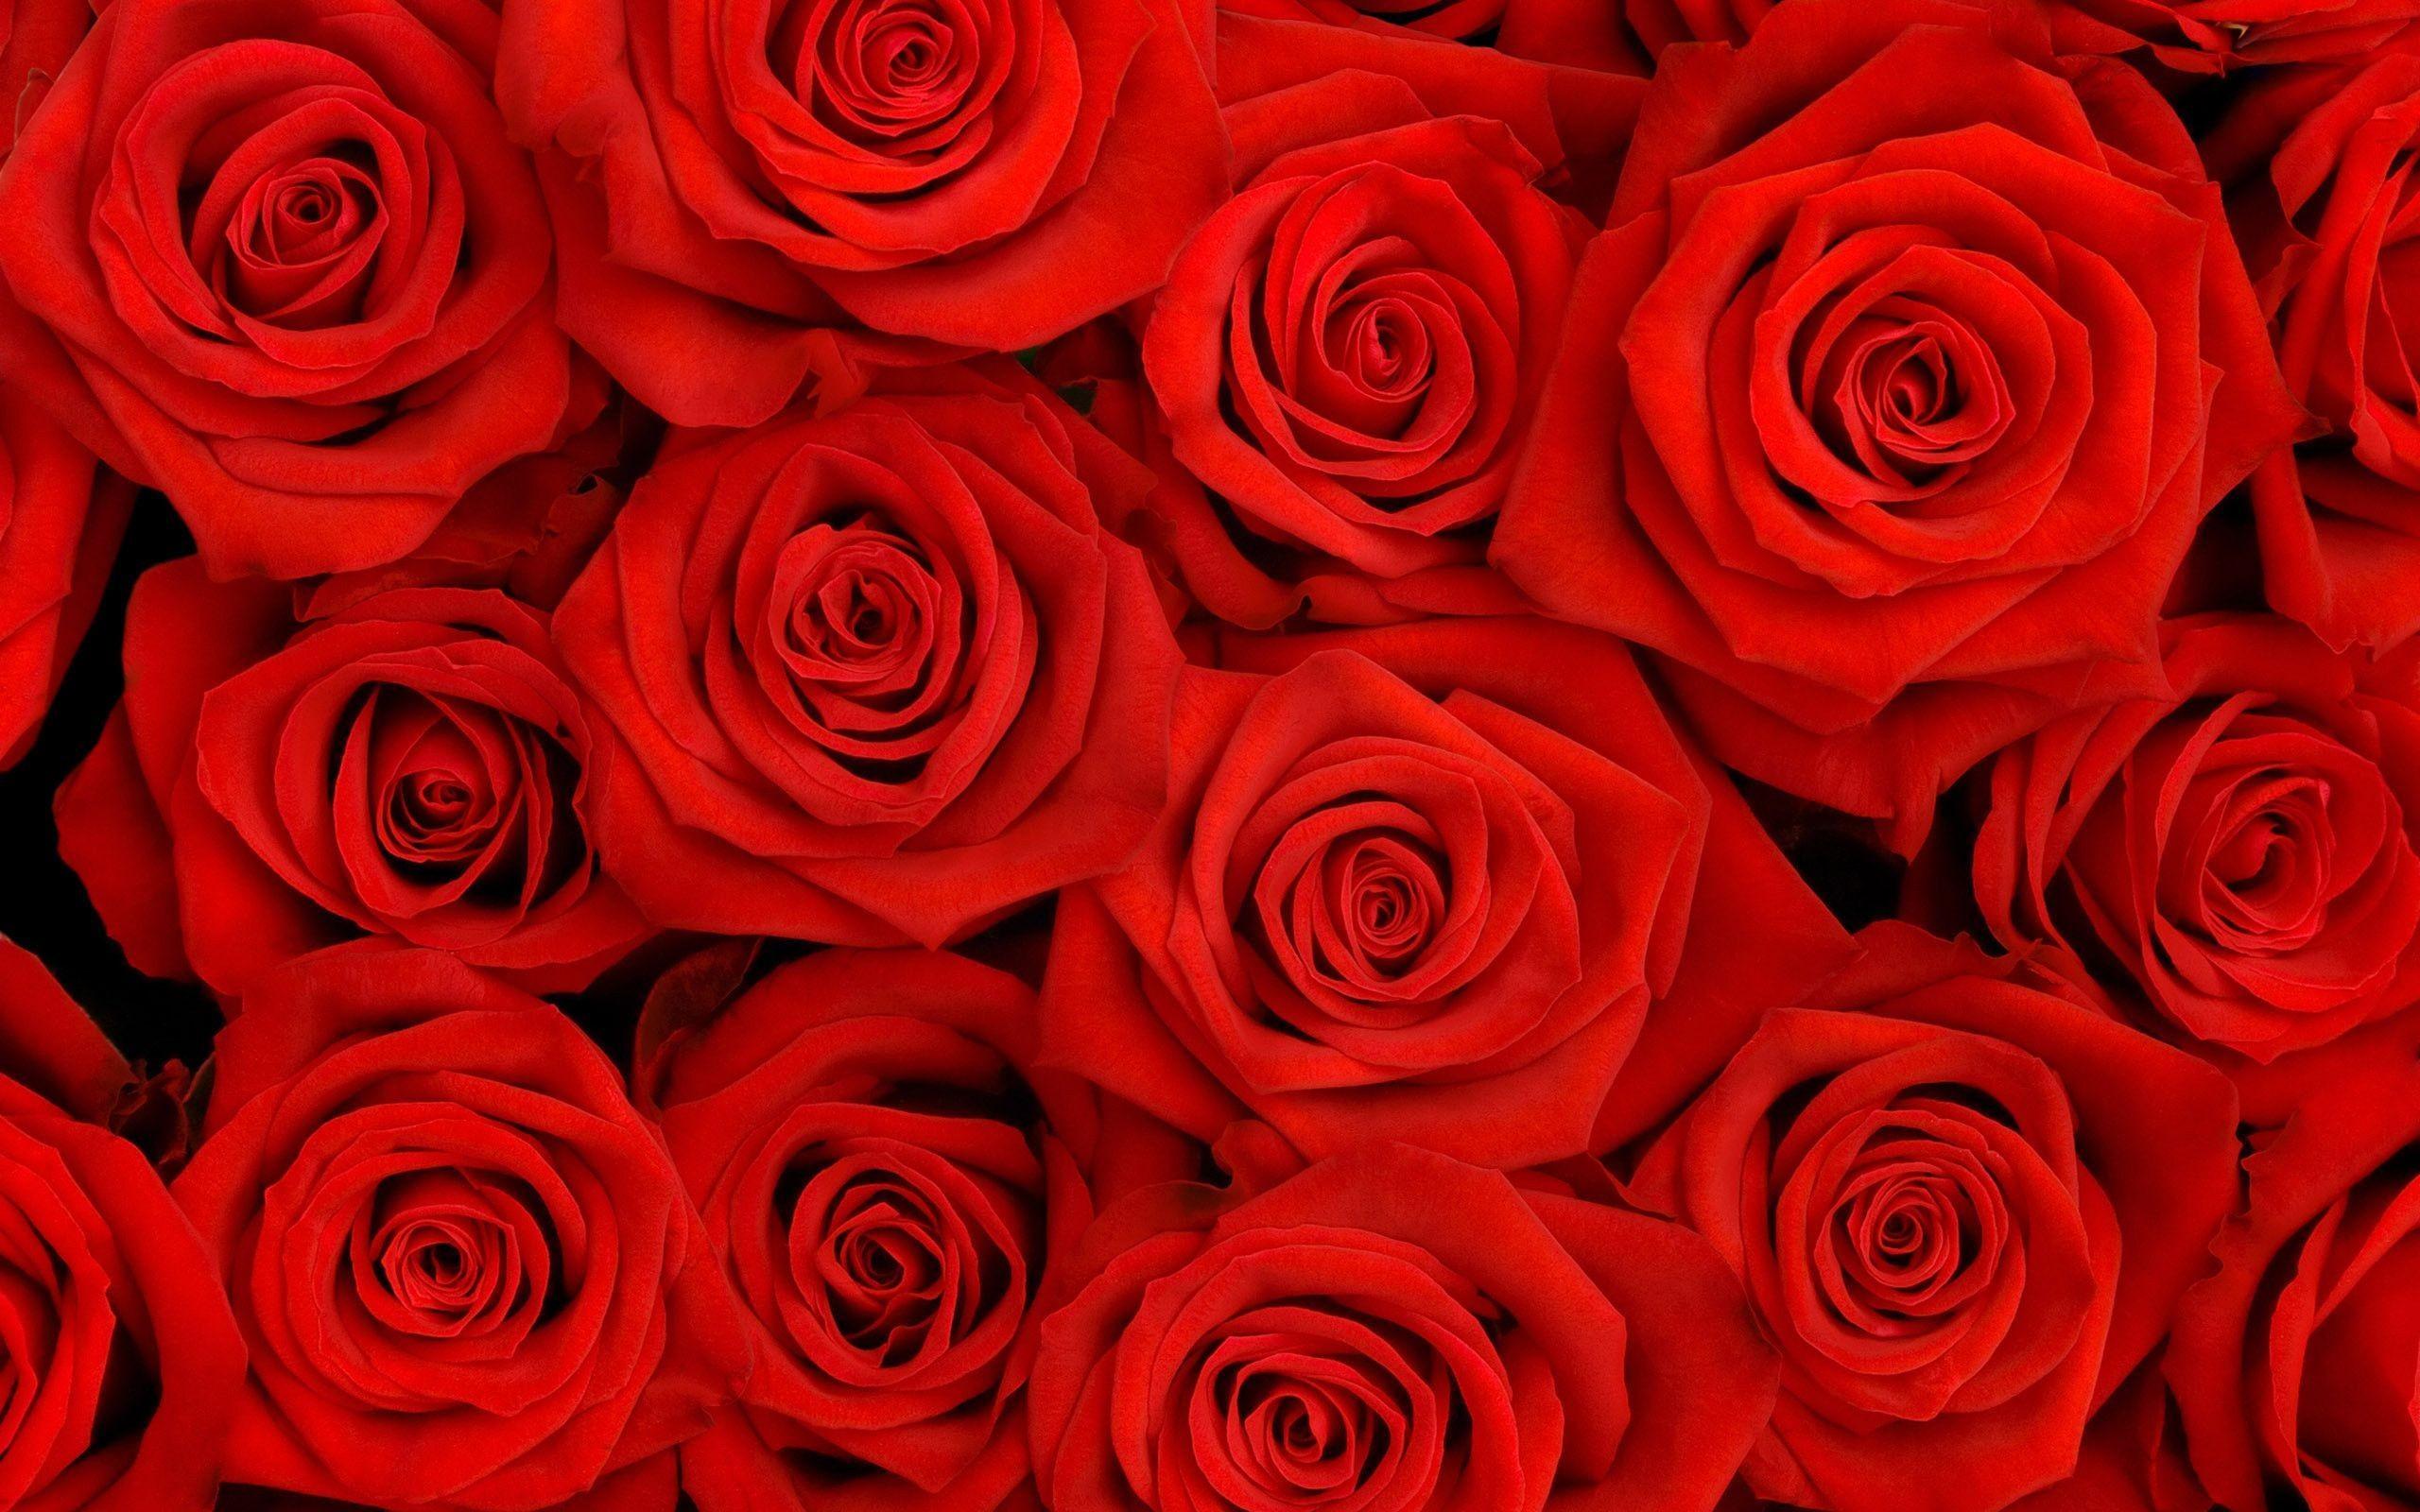 Roses Screensaver Wallpaper